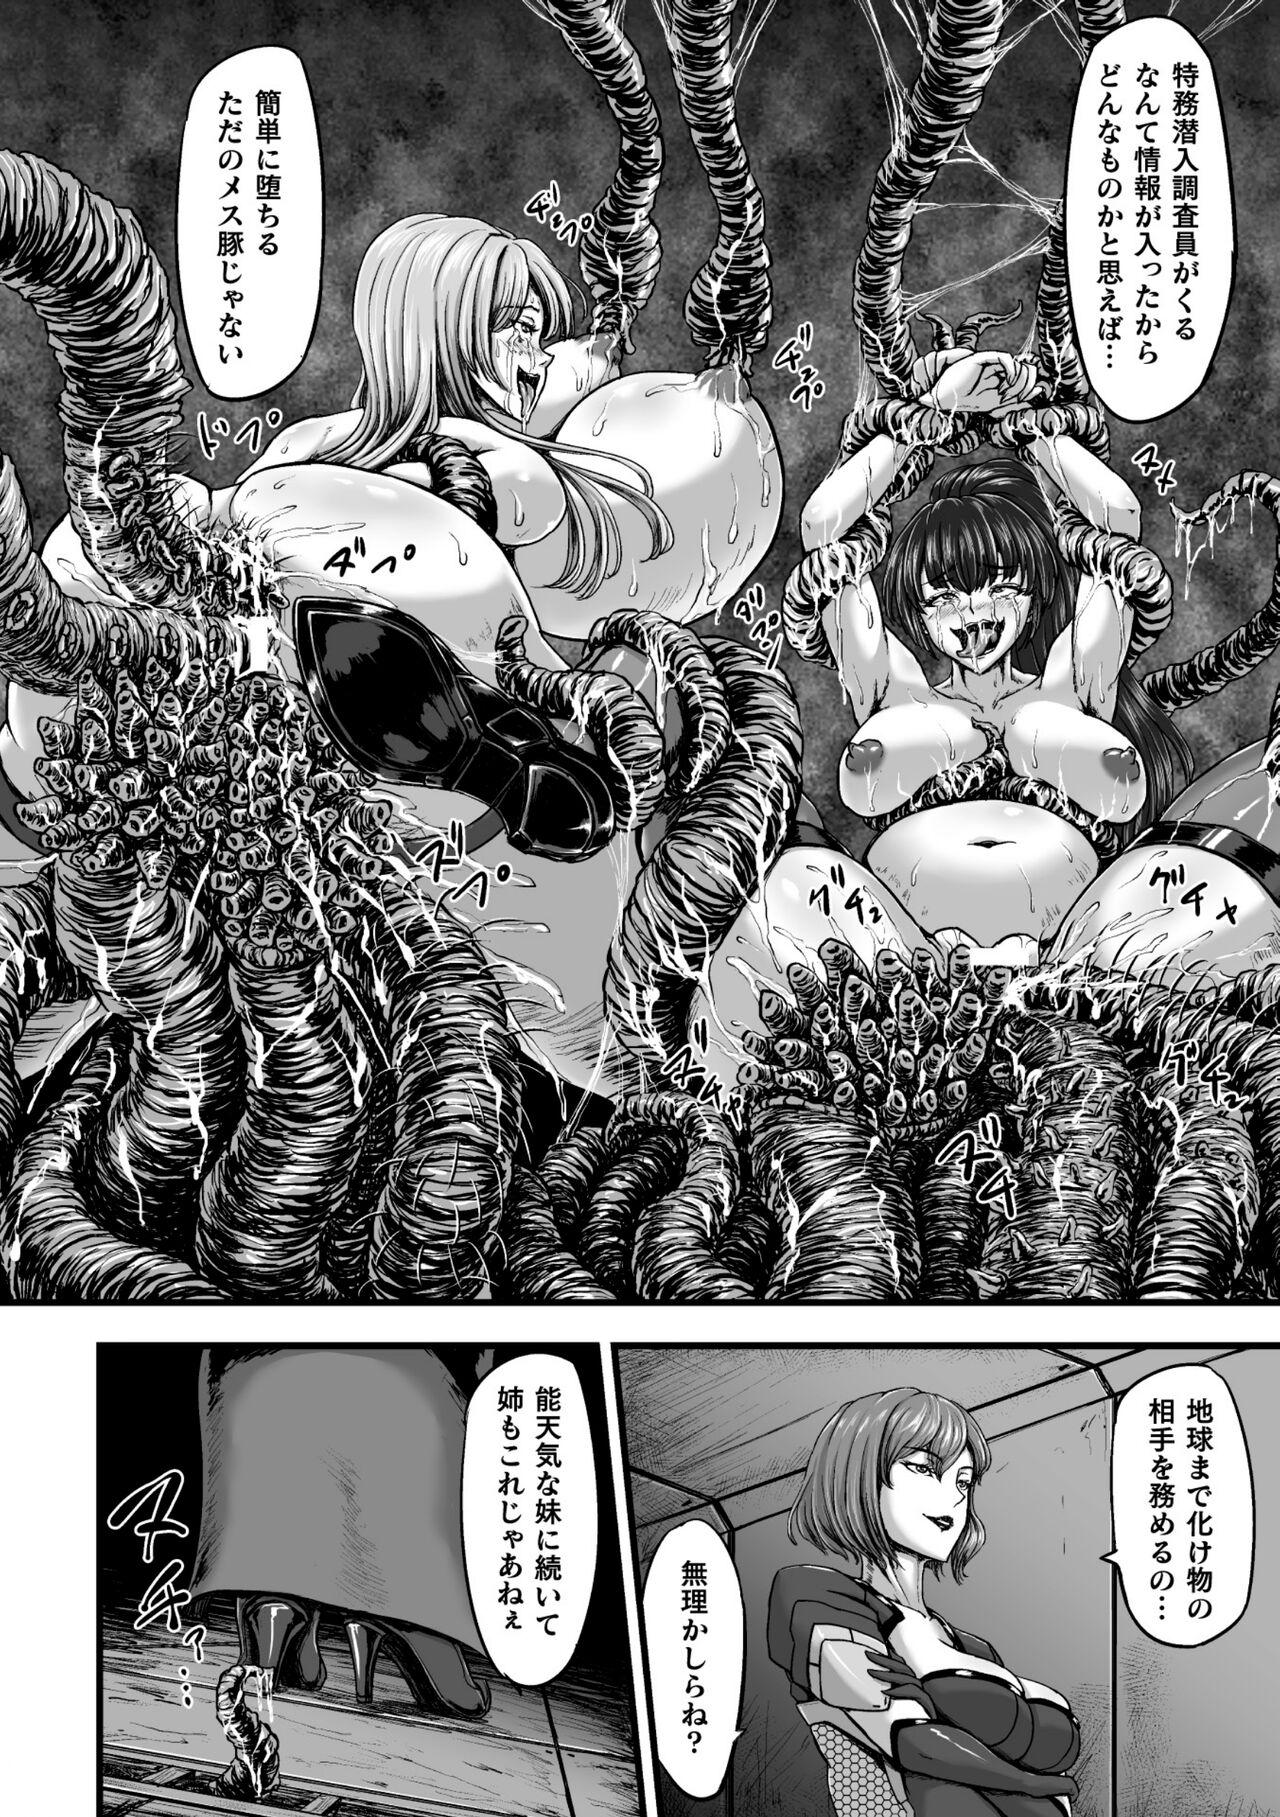 Breasts Kangoku Tentacle Battleship Episode 3 Spooning - Page 6